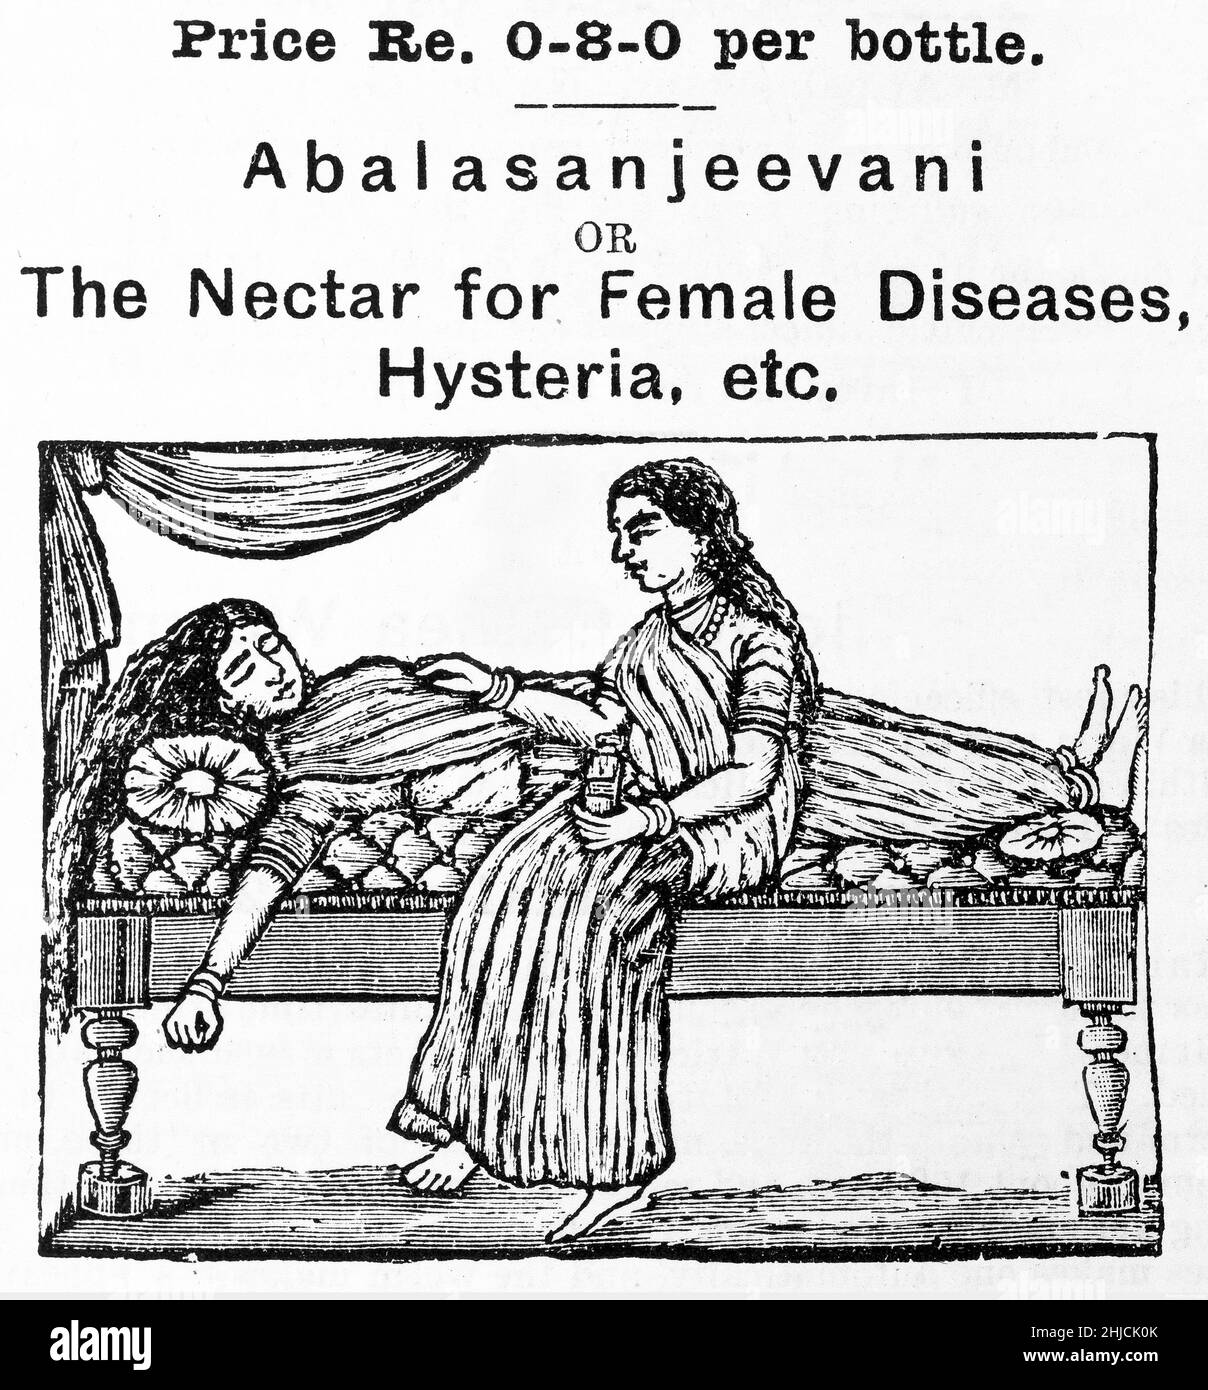 Eine Anzeige für „Abalasanjeevani oder den Nektar für weibliche Krankheiten, Hysterie usw.“ Dies war ein Tonikum, das von Pandit Gopalacharlu, der 1872 in Machilipatnam in Indien geboren wurde, geschaffen wurde. Er studierte ayurveda in Mysore und begann 1898 mit dem Ayurvedasramam die ayurvedische Medizin zu popularisieren. Die ayurvedische Medizin ist ein System der traditionellen Hindu-Medizin. Die ältesten bekannten ayurvedischen Texte sind die Susrutha Samhita und die Charaka Samhita. Stockfoto